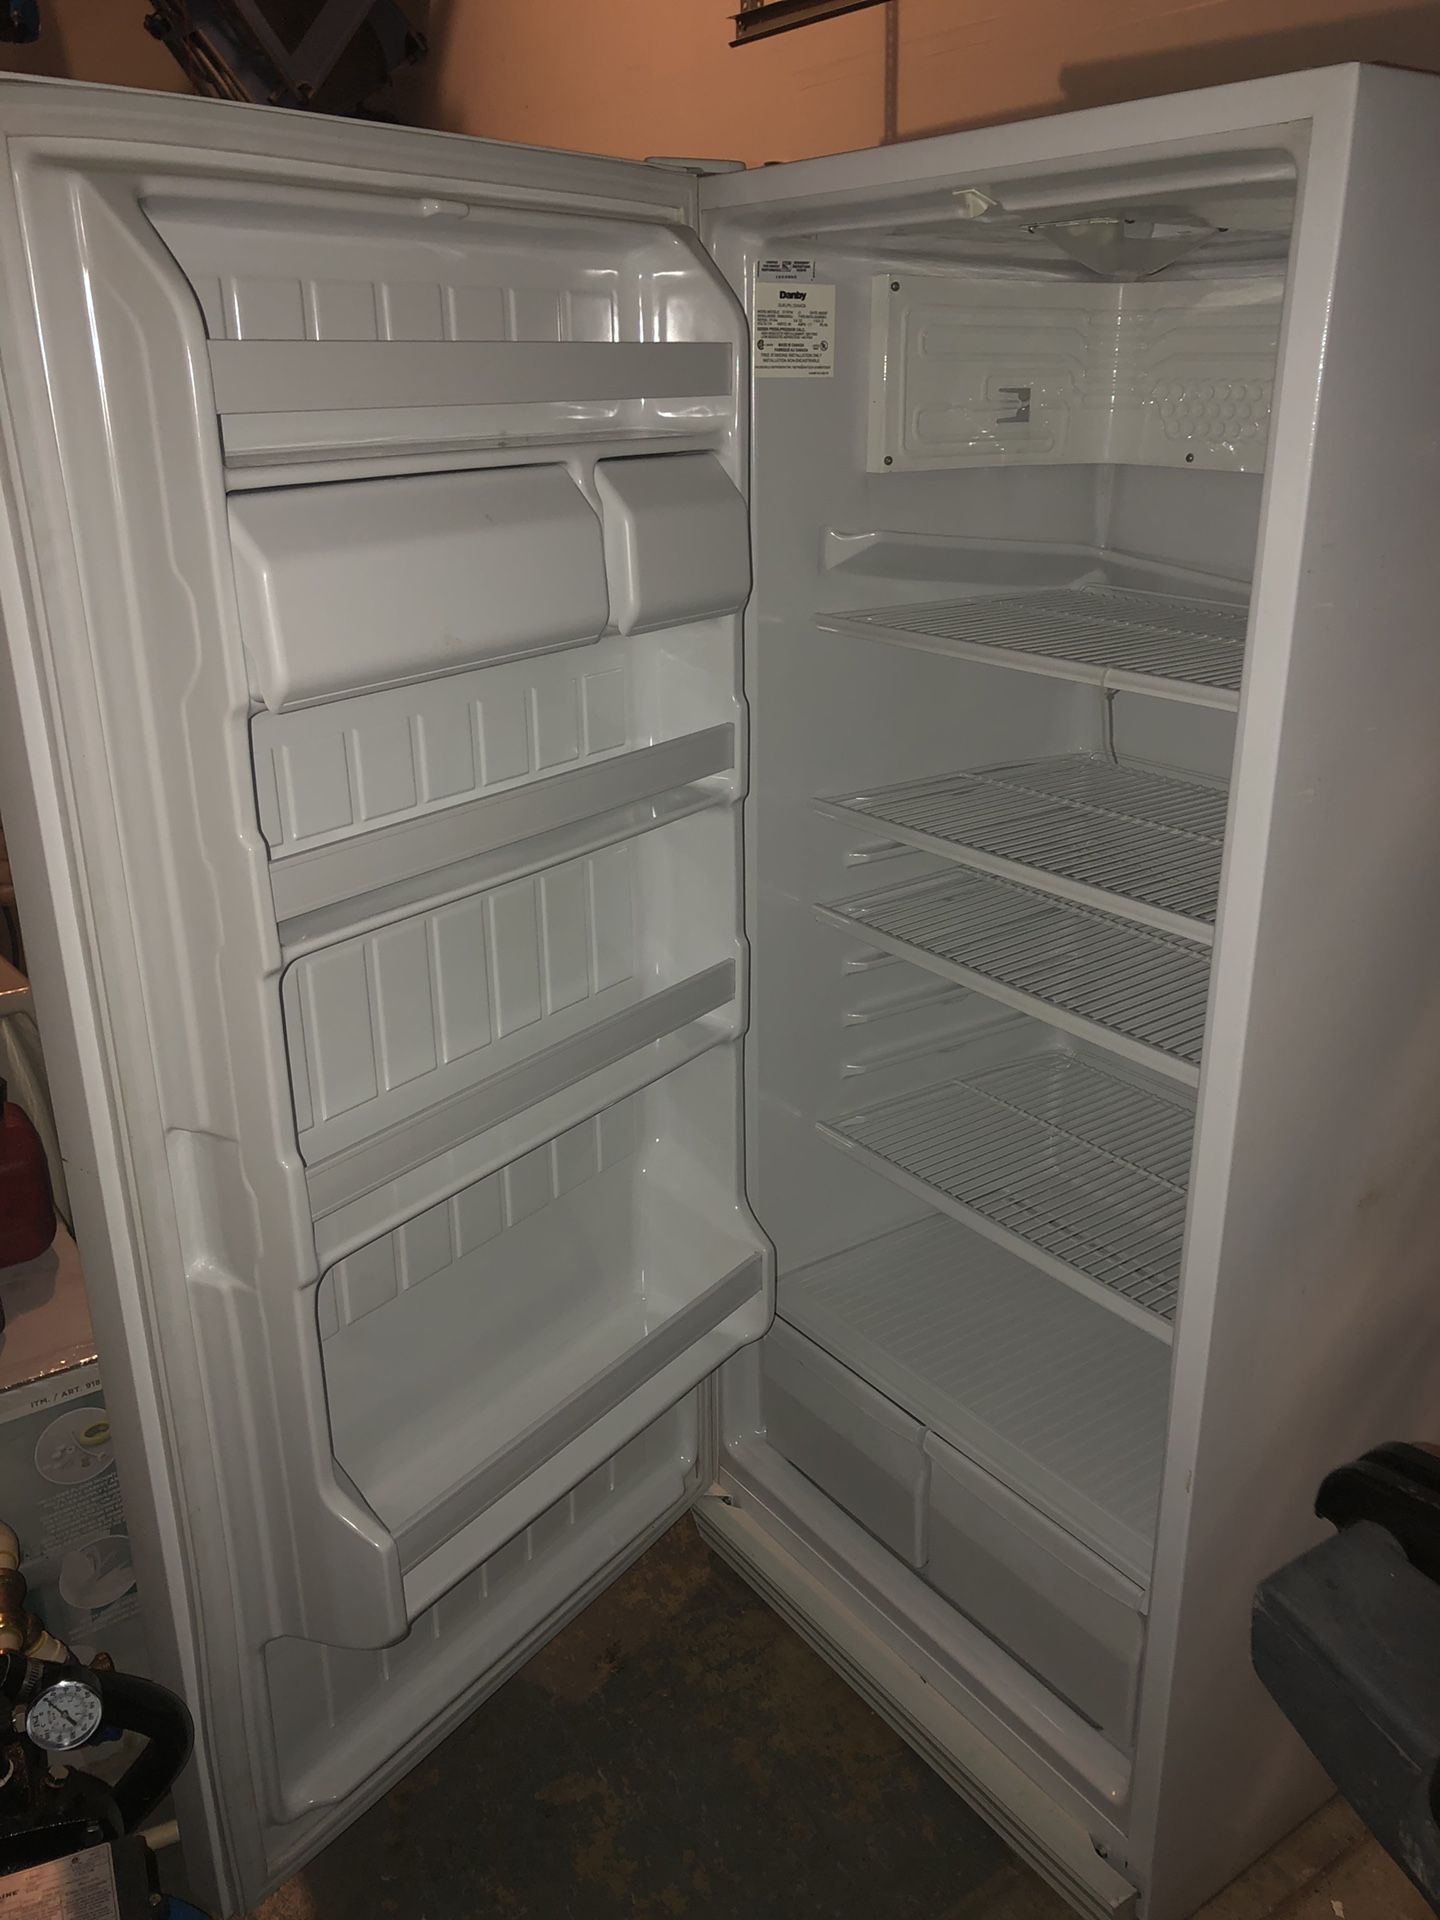 Demby refrigerator no freezer